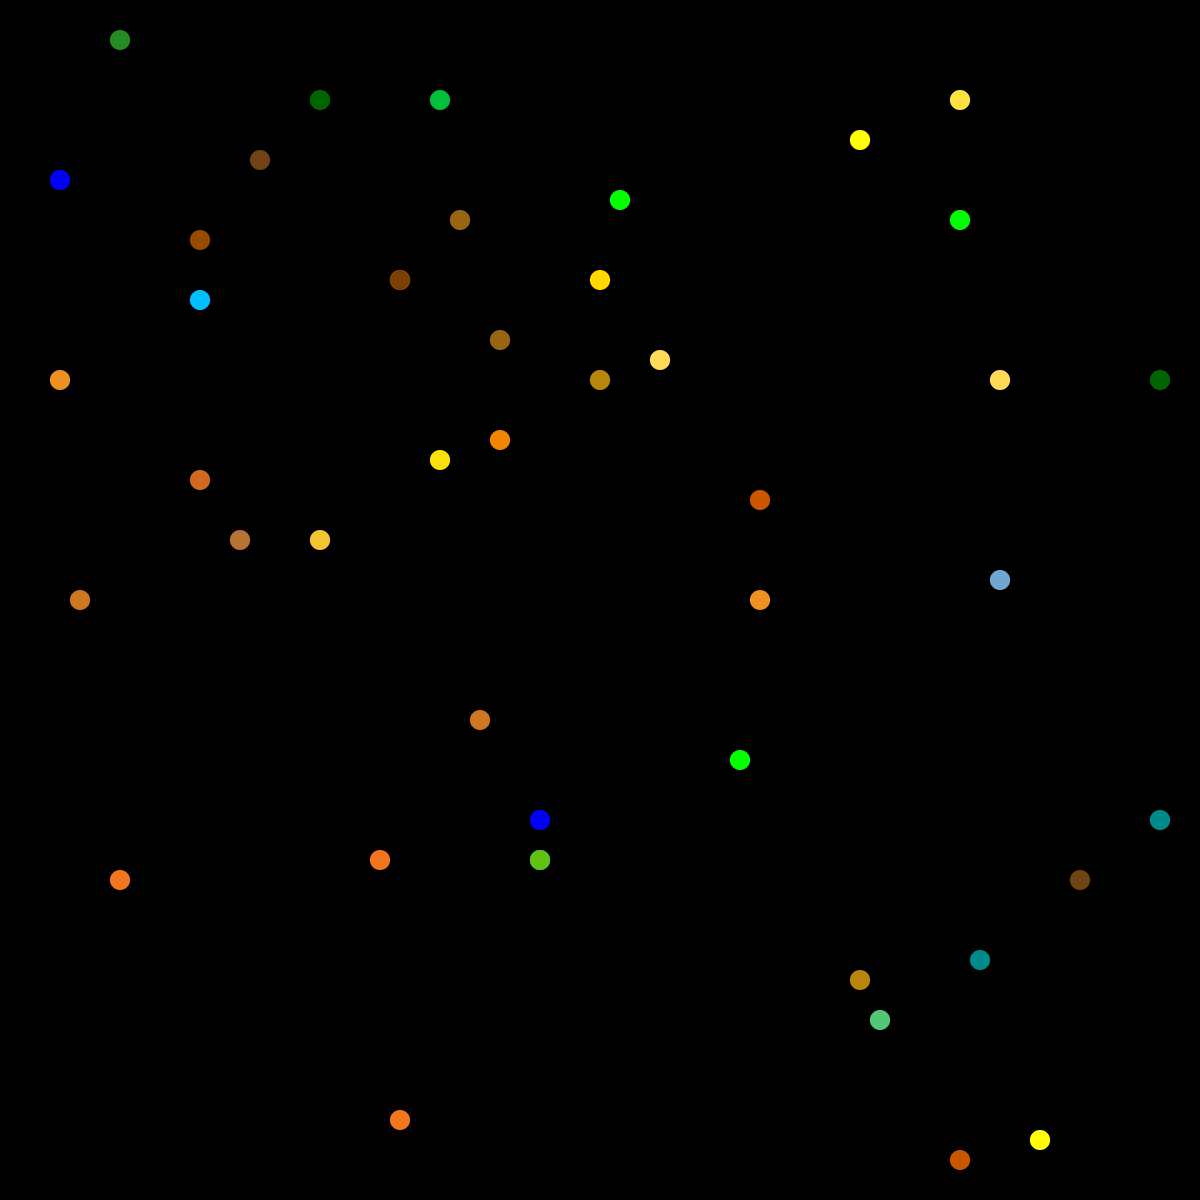 Farbige Punkte als Startwerte für das Voronoi-Diagramm